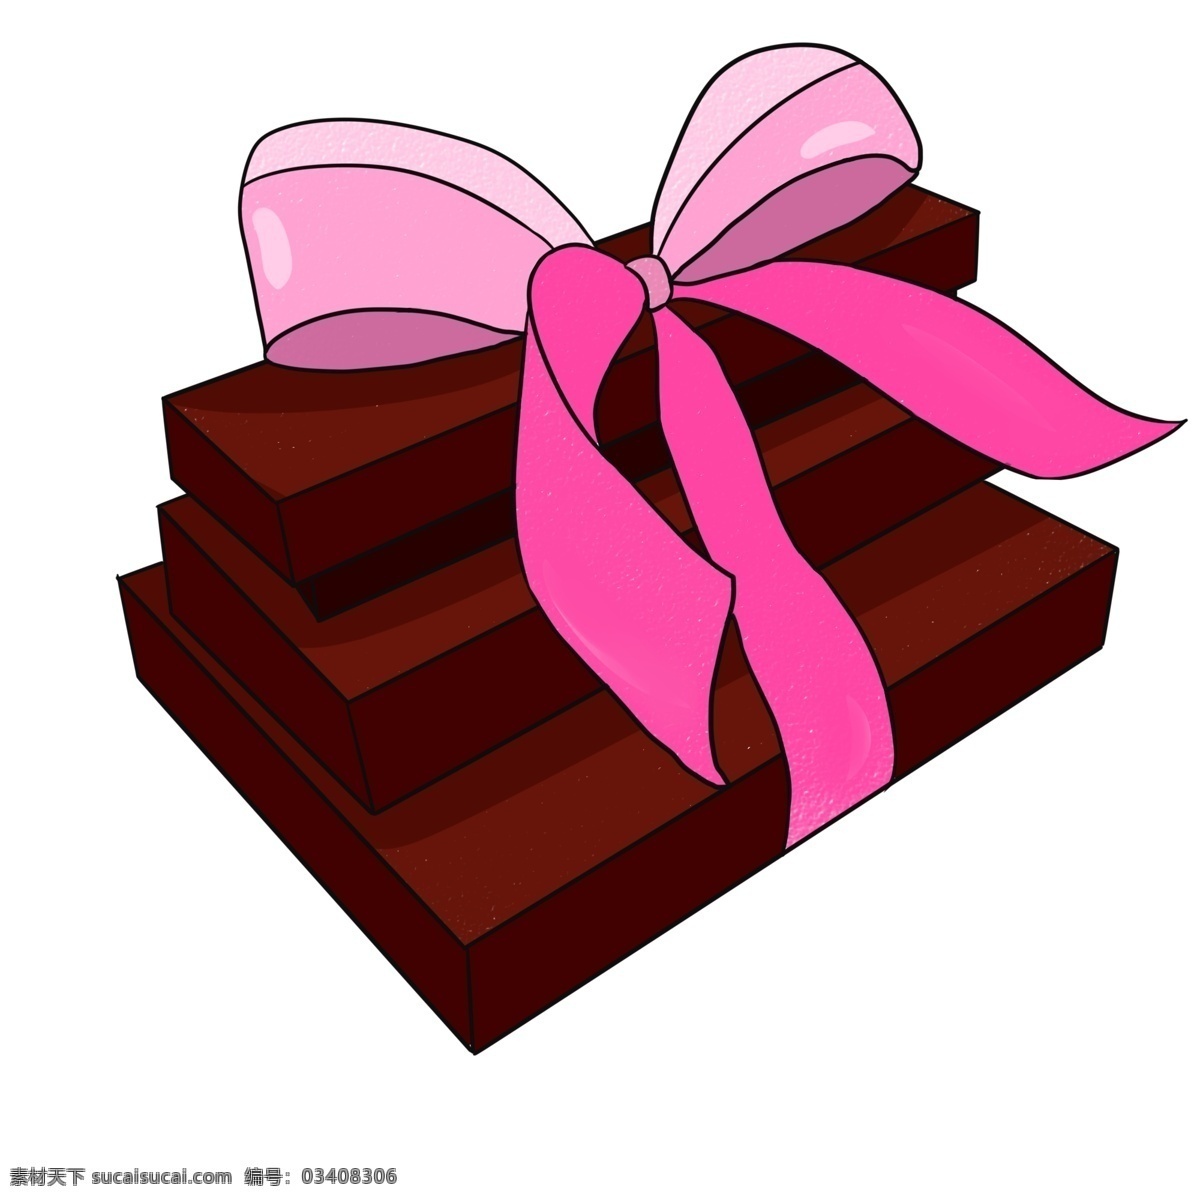 情人节 巧克力 块 插画 甜点 甜品 巧克力块 情人节礼物 粉色蝴蝶结 巧克力插画 绑 一起 巧克力礼物